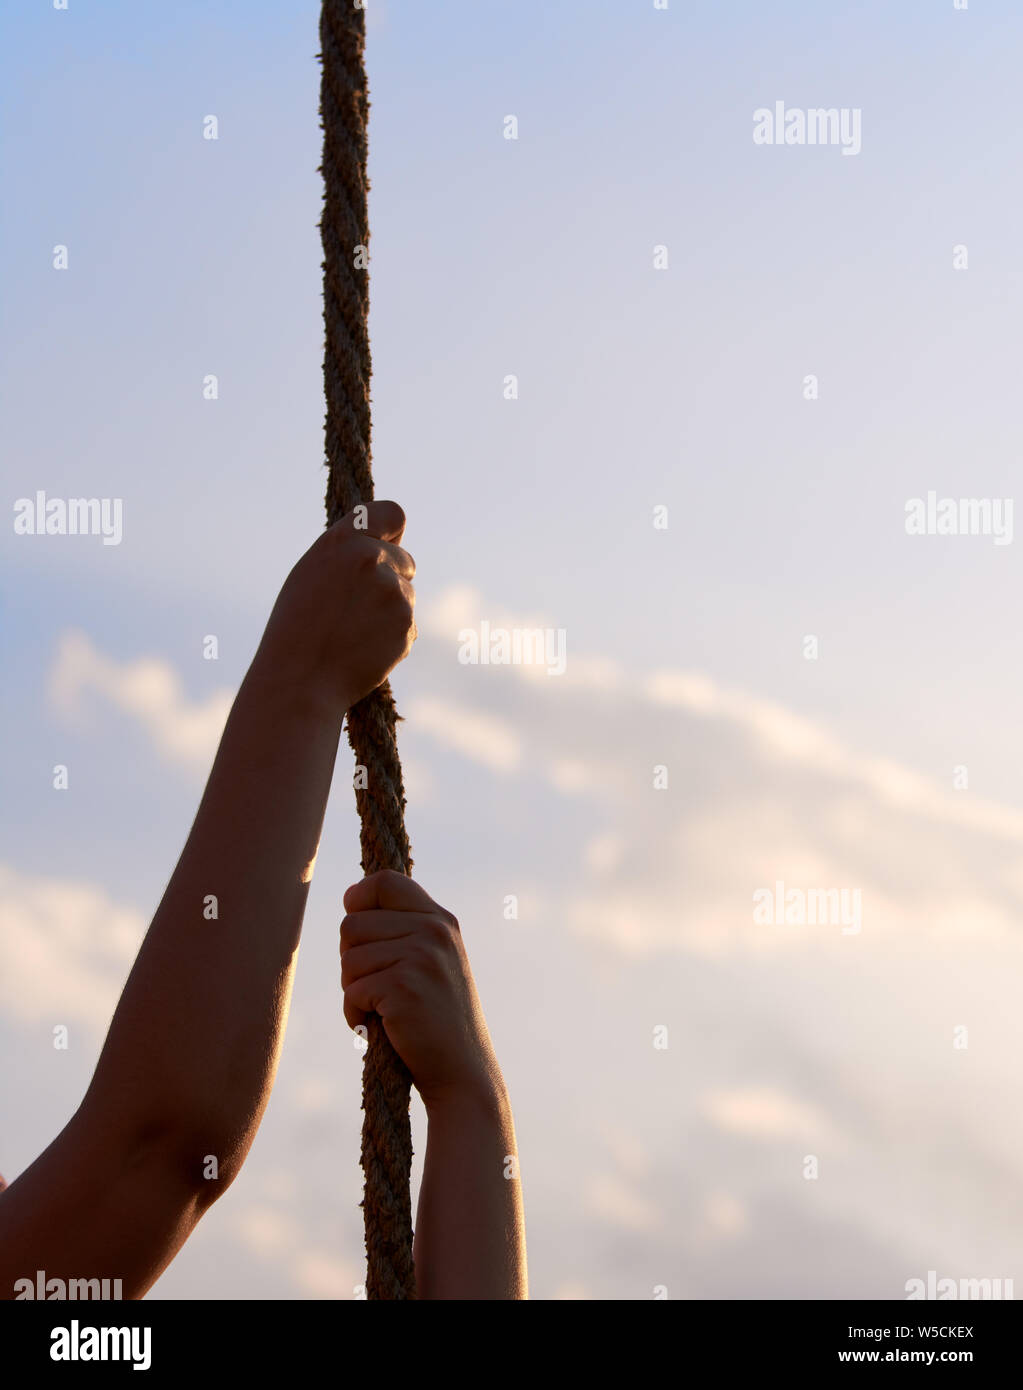 Junge Frau oder ein Mädchen hält die Hände an Seil und steigt im Sportunterricht der Klasse. Blauer Himmel mit Wolken. Stockfoto